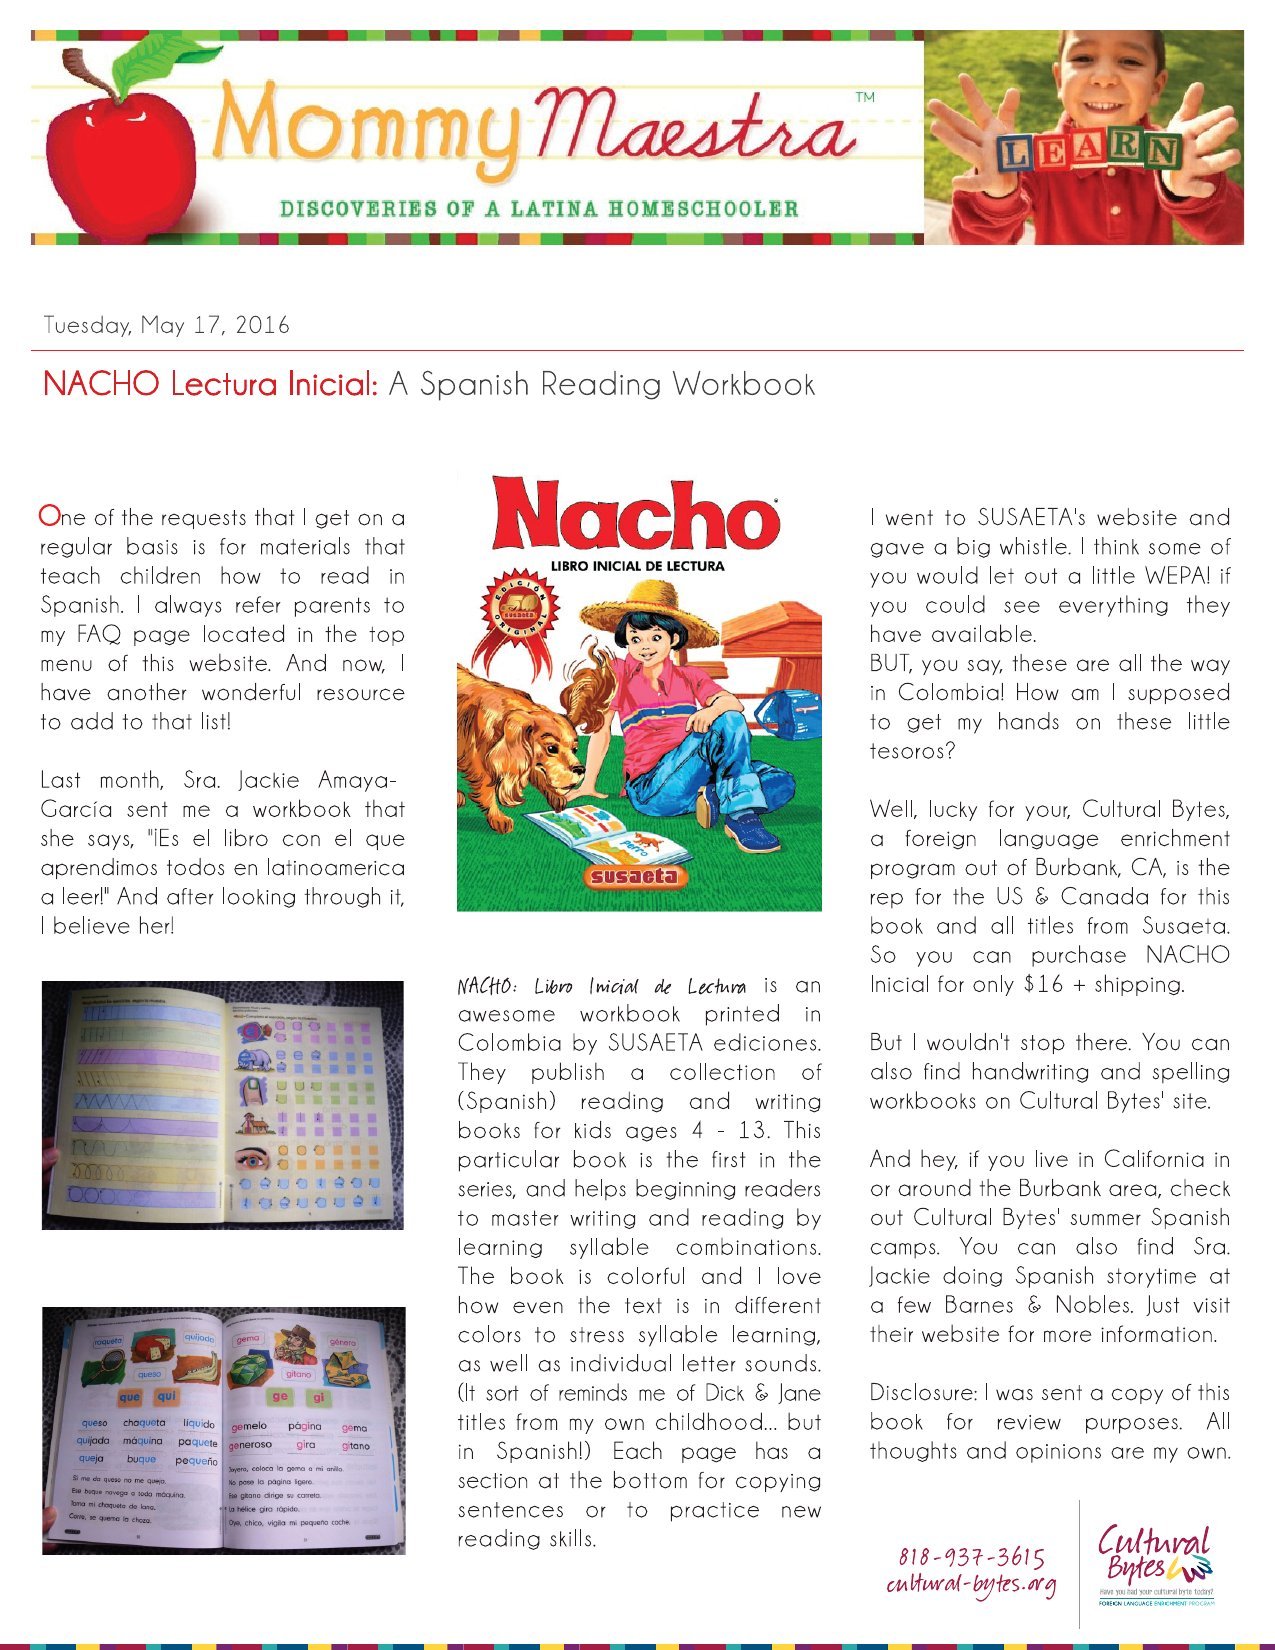 descargar el libro nacho pdf download free